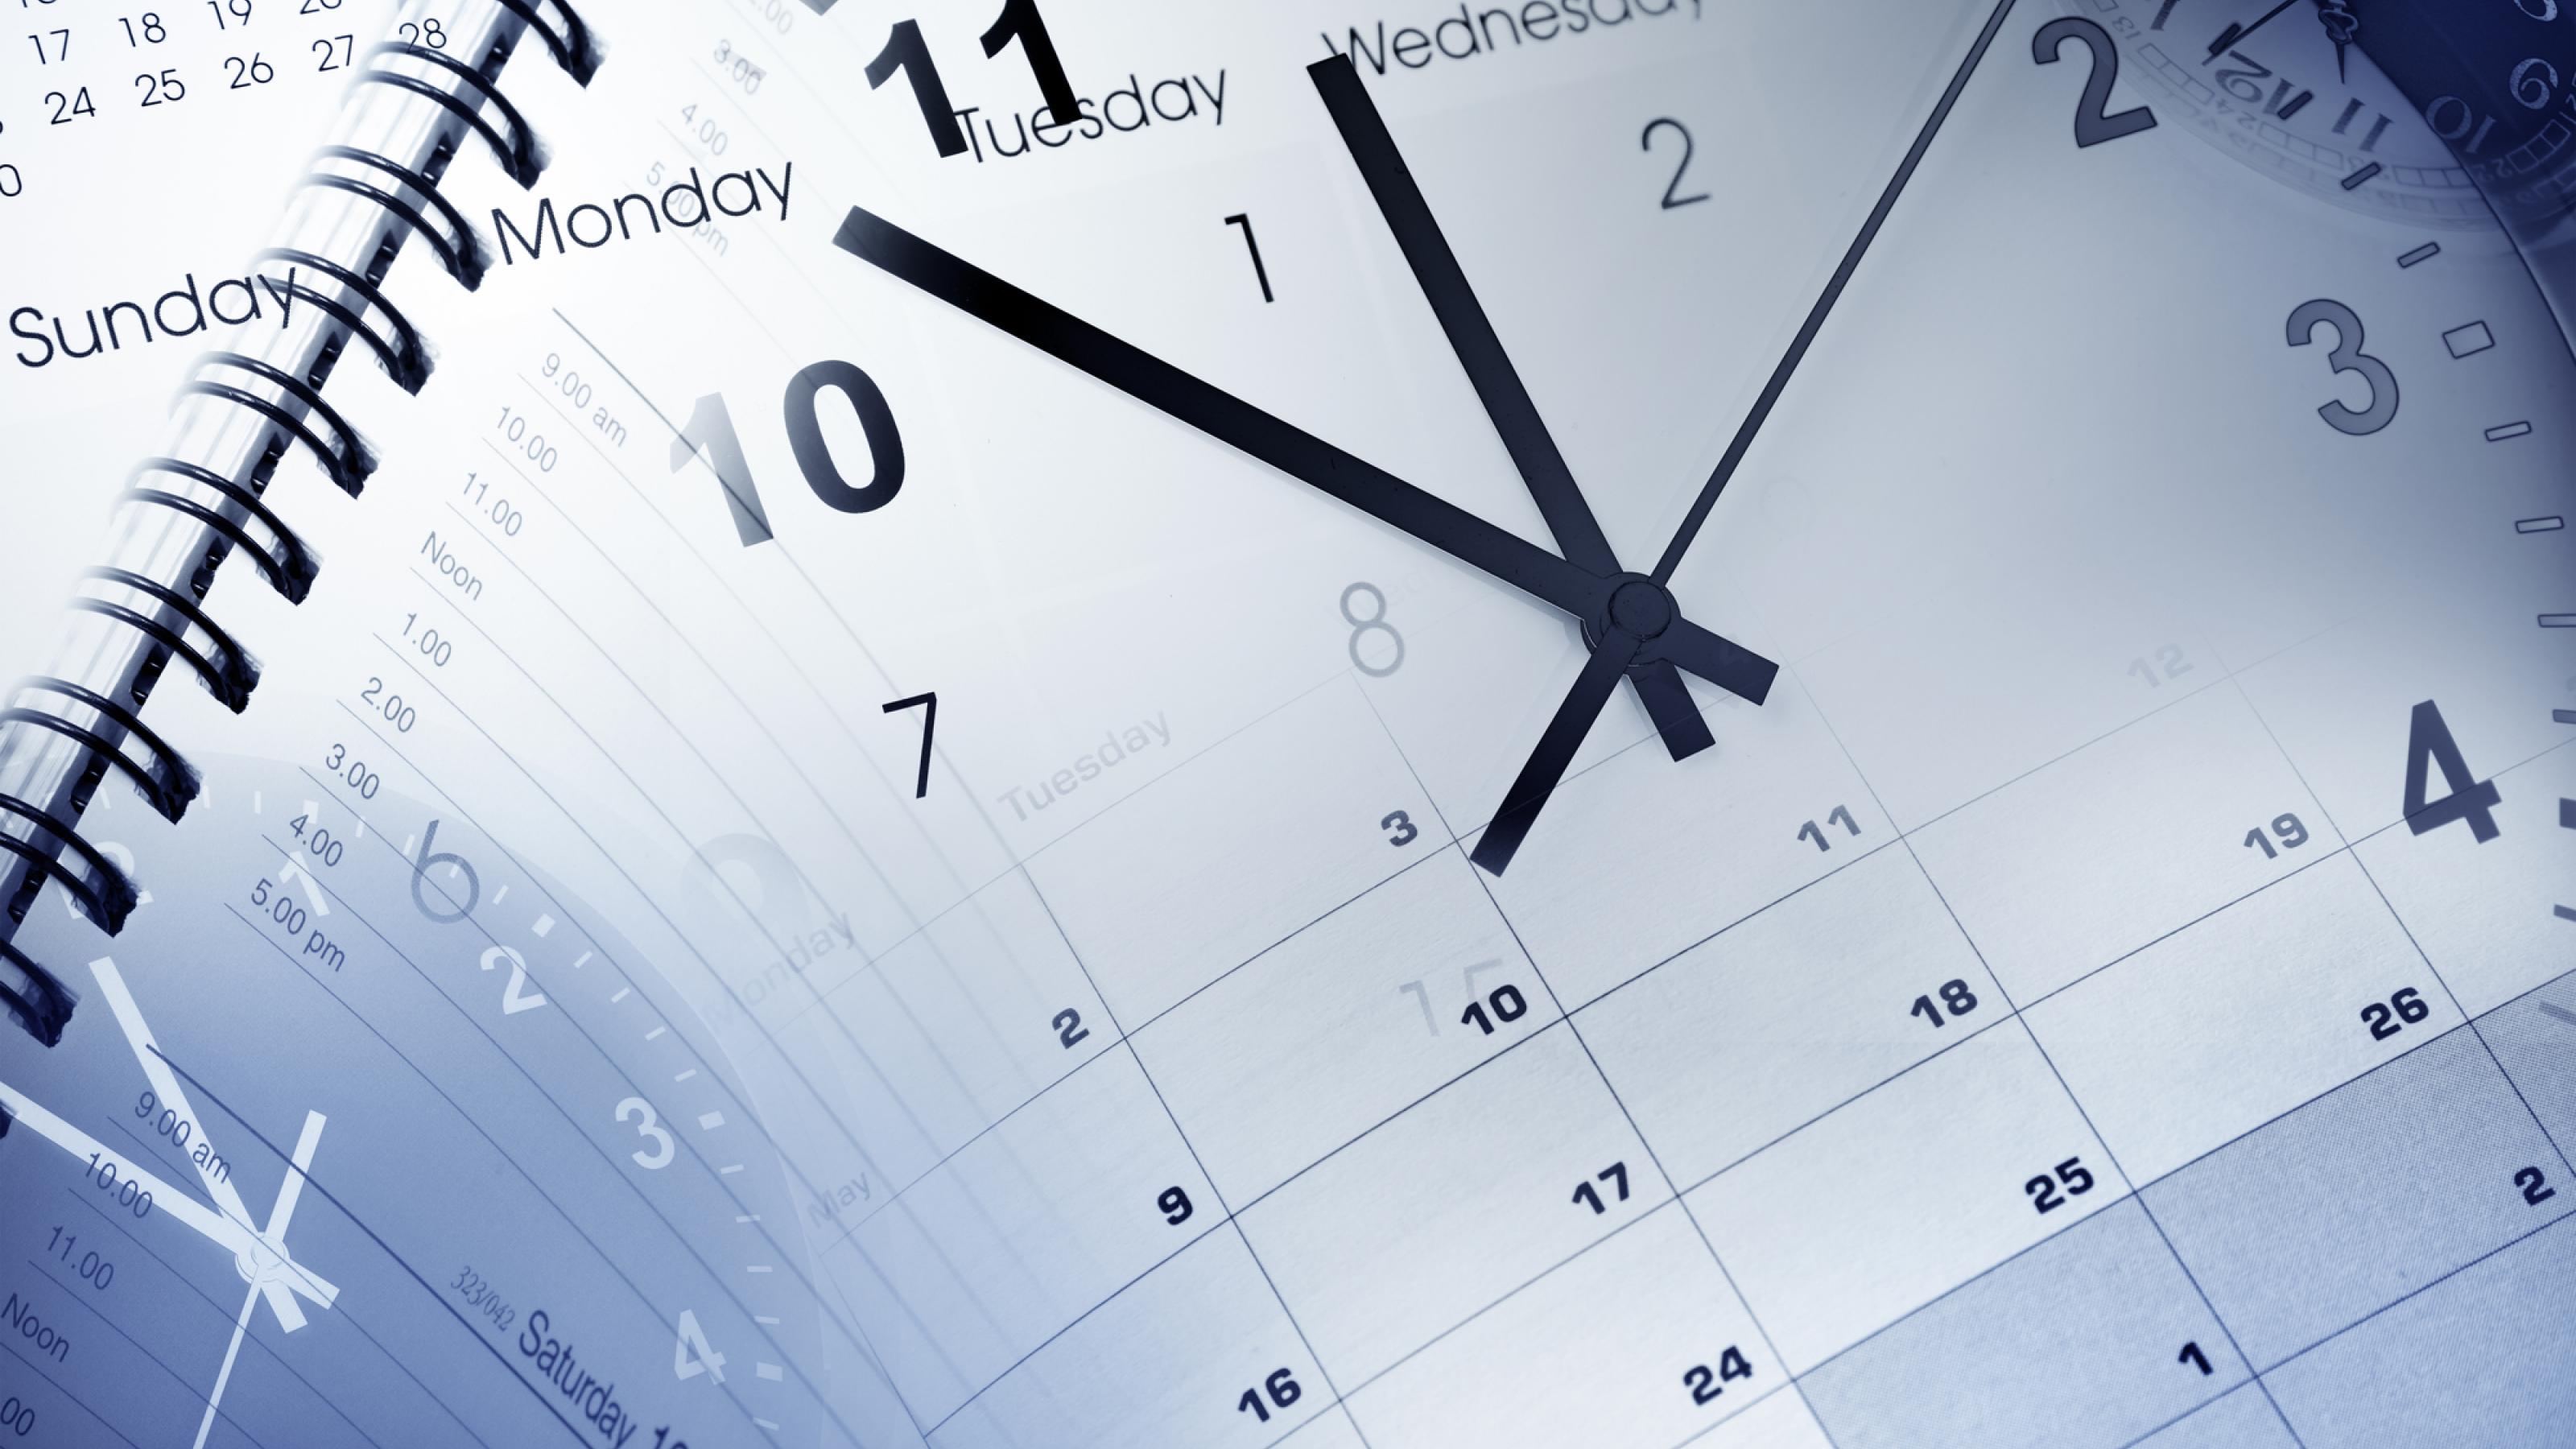 Eine blaugraue Bildmontage setzt mehrere Uhren und Kalender übereinander. Der Anblick suggeriert, dass es schwierig ist, seine Termine vernünftig zu planen.